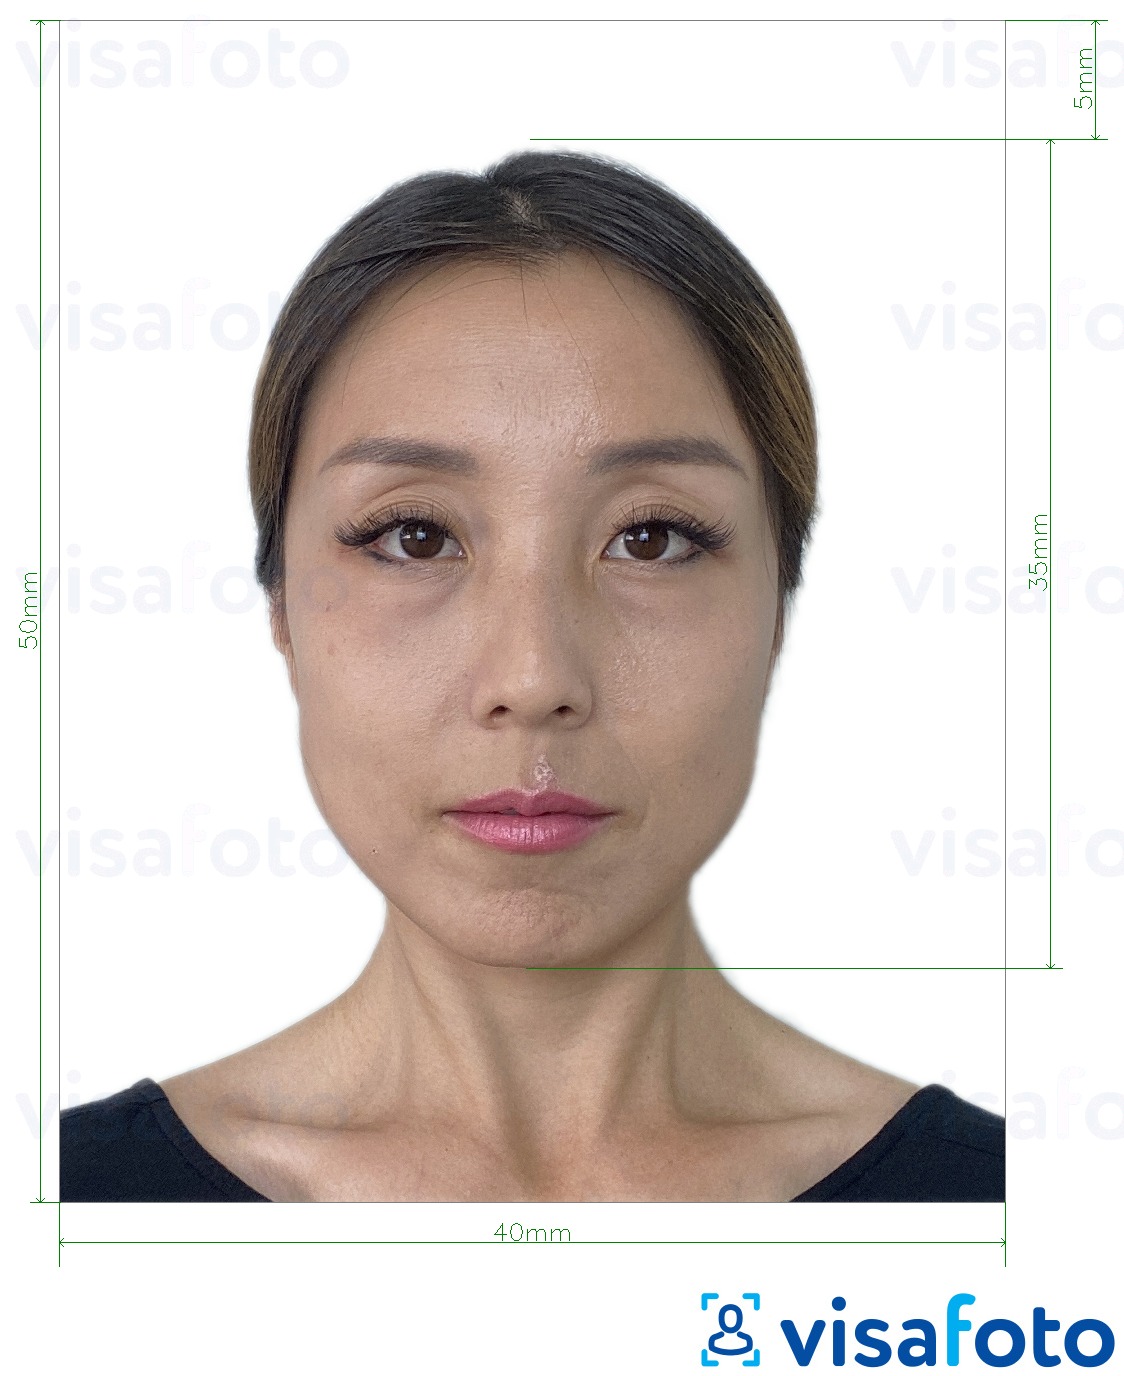 Voorbeeld van foto voor Hong Kong Paspoort 40x50 mm (4x5 cm) met exacte maatspecificatie